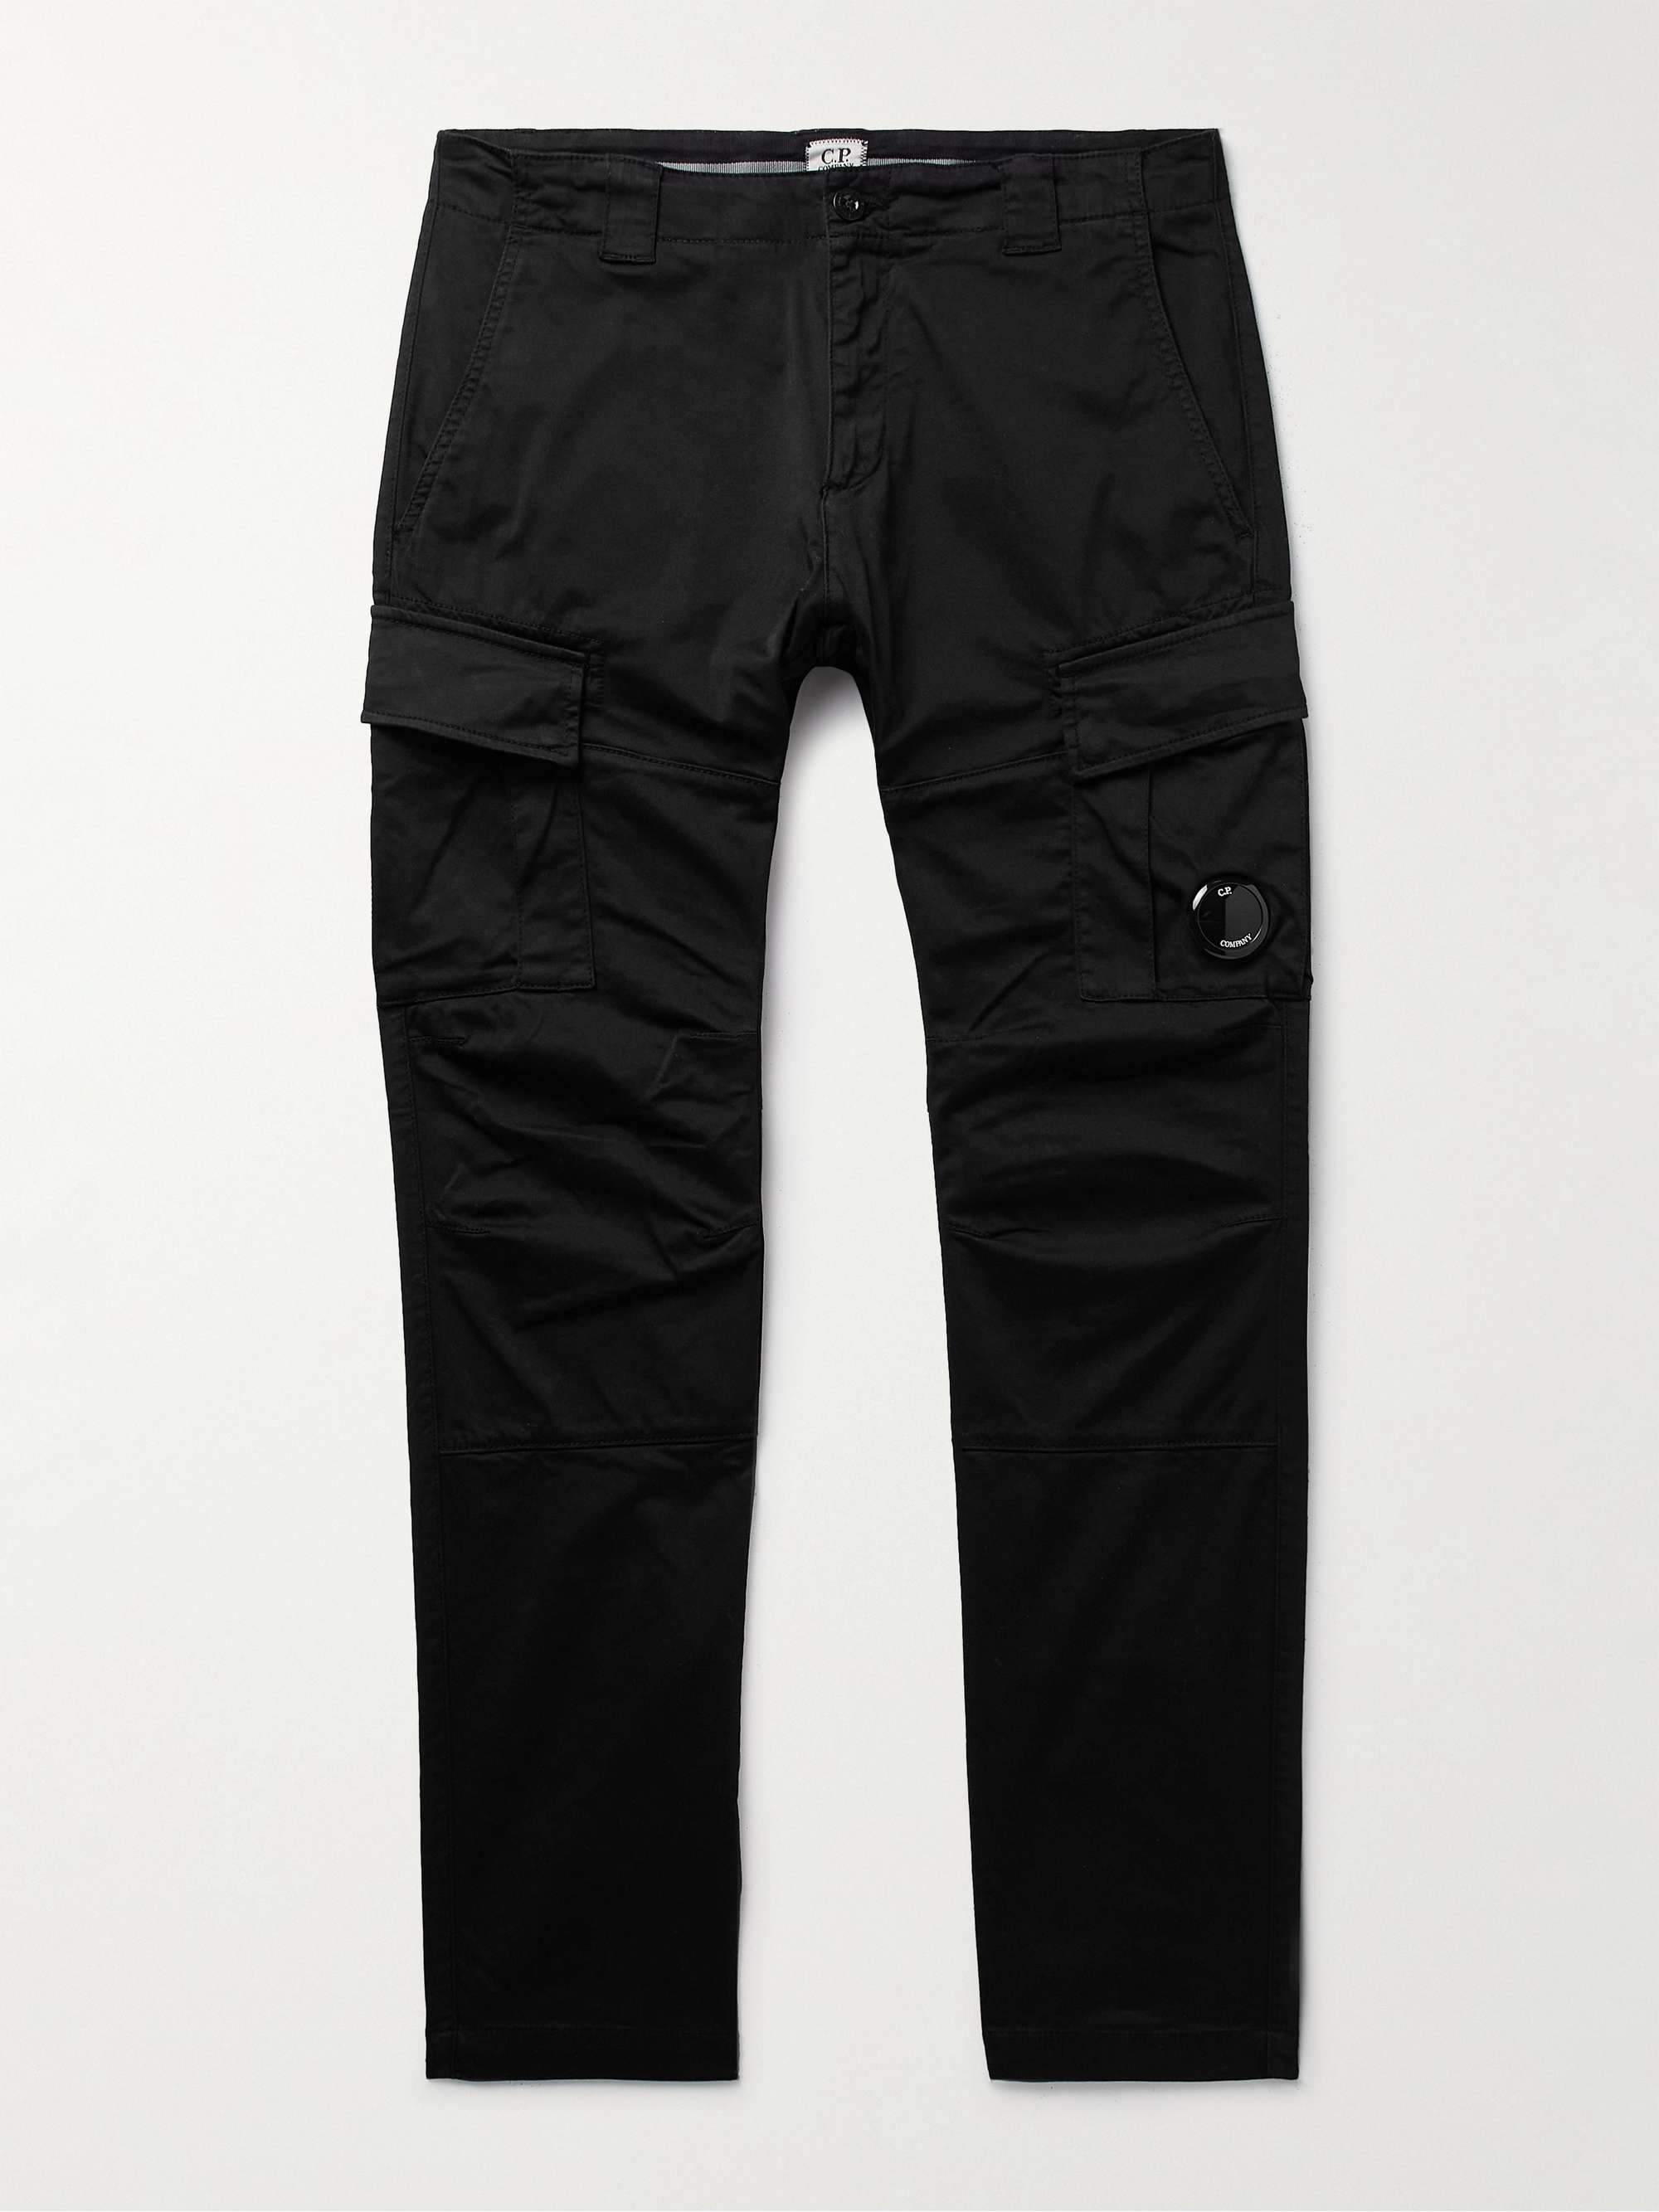 C.P. COMPANY Slim-Fit Logo-Appliquéd Cotton-Blend Cargo Trousers | MR PORTER